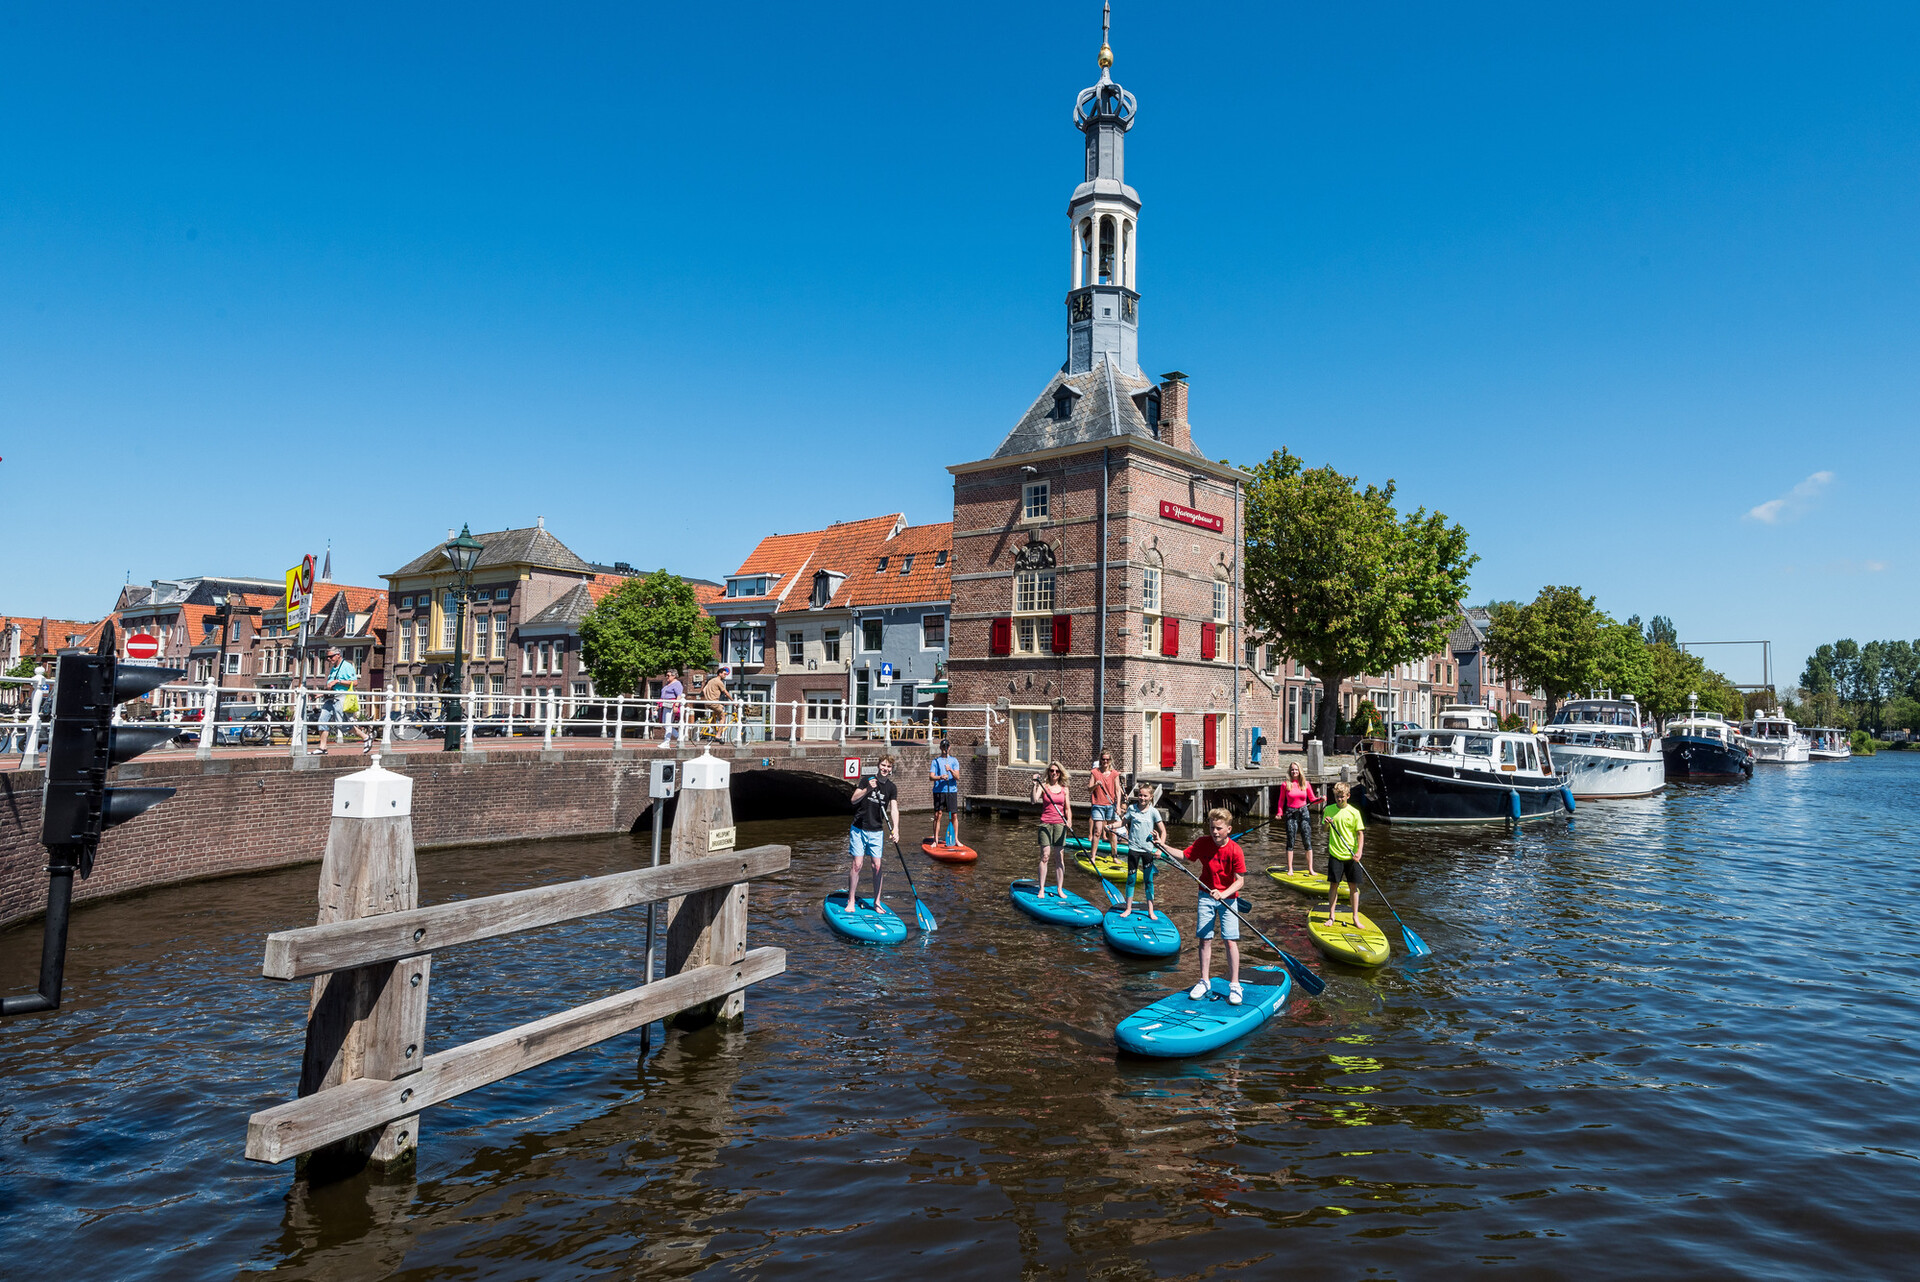 Group activities in the beautiful surroundings of Alkmaar